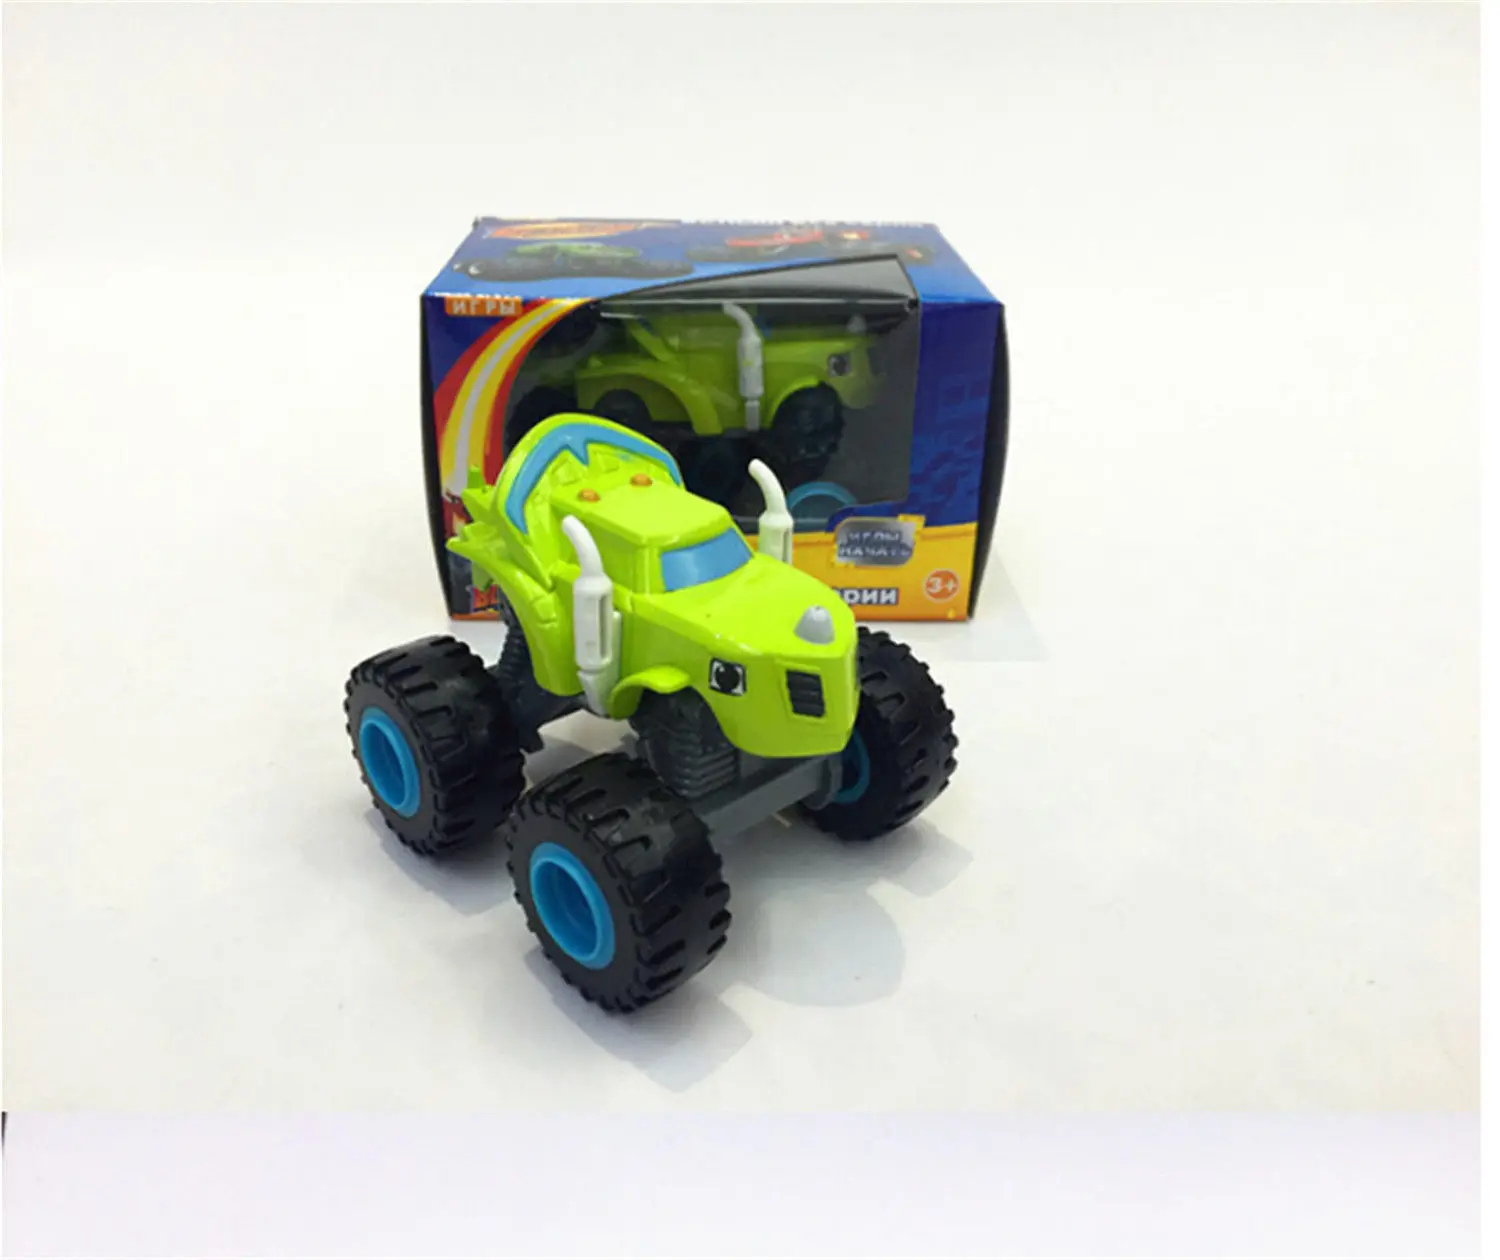 Детская игрушка для детей от 2 лет или старше, Машинка и монстр, супер трюки, Blaze, детский грузовик, автомобиль, Coll, подарок для ребенка на день рождения, Рождество - Цвет: Light Green